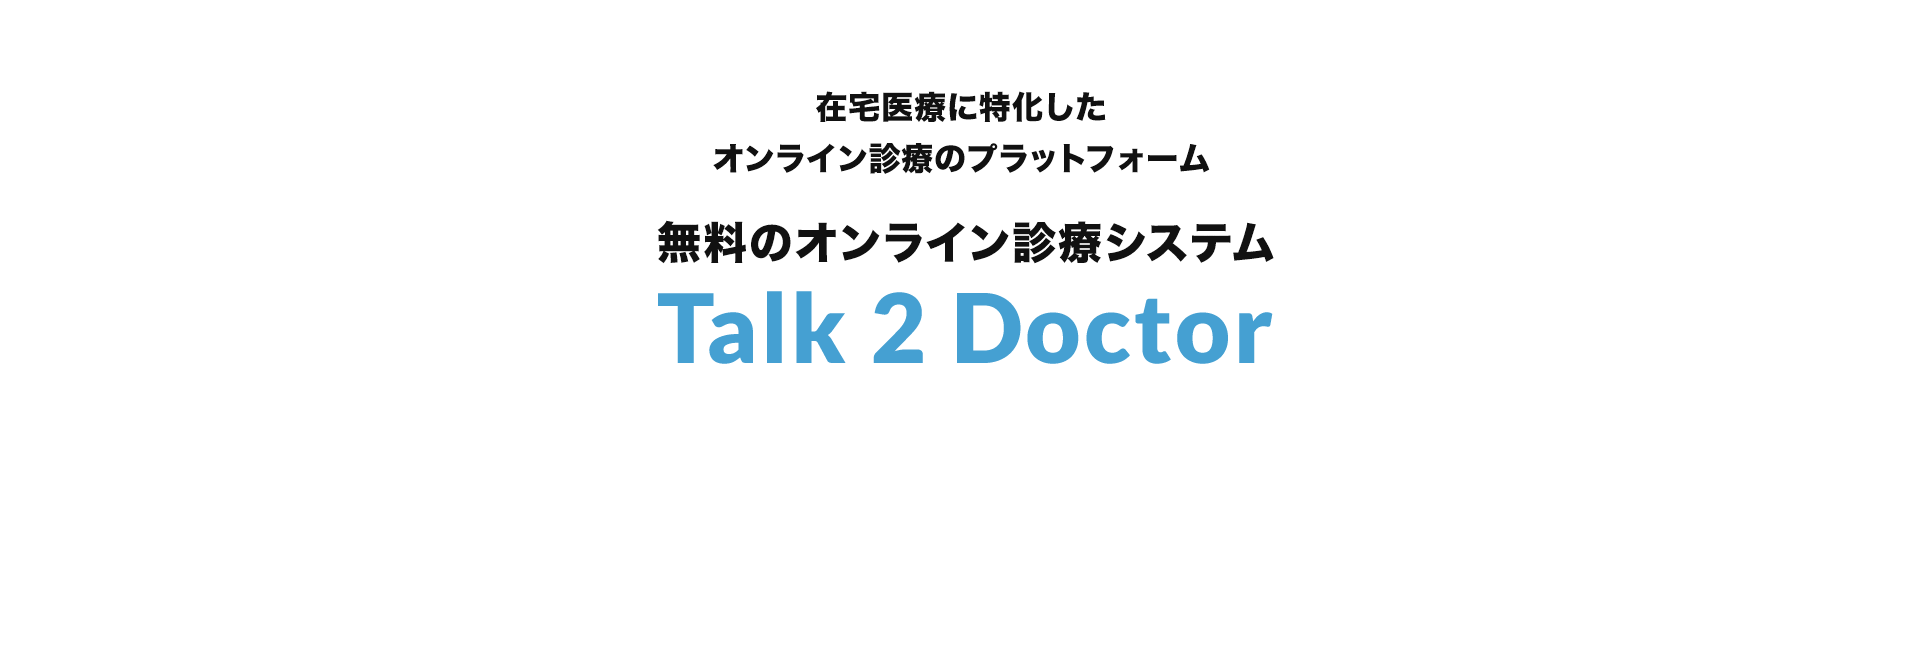 在宅医療に特化したオンライン診療のプラットフォーム 無料のオンライン診療システム Talk 2 Doctor